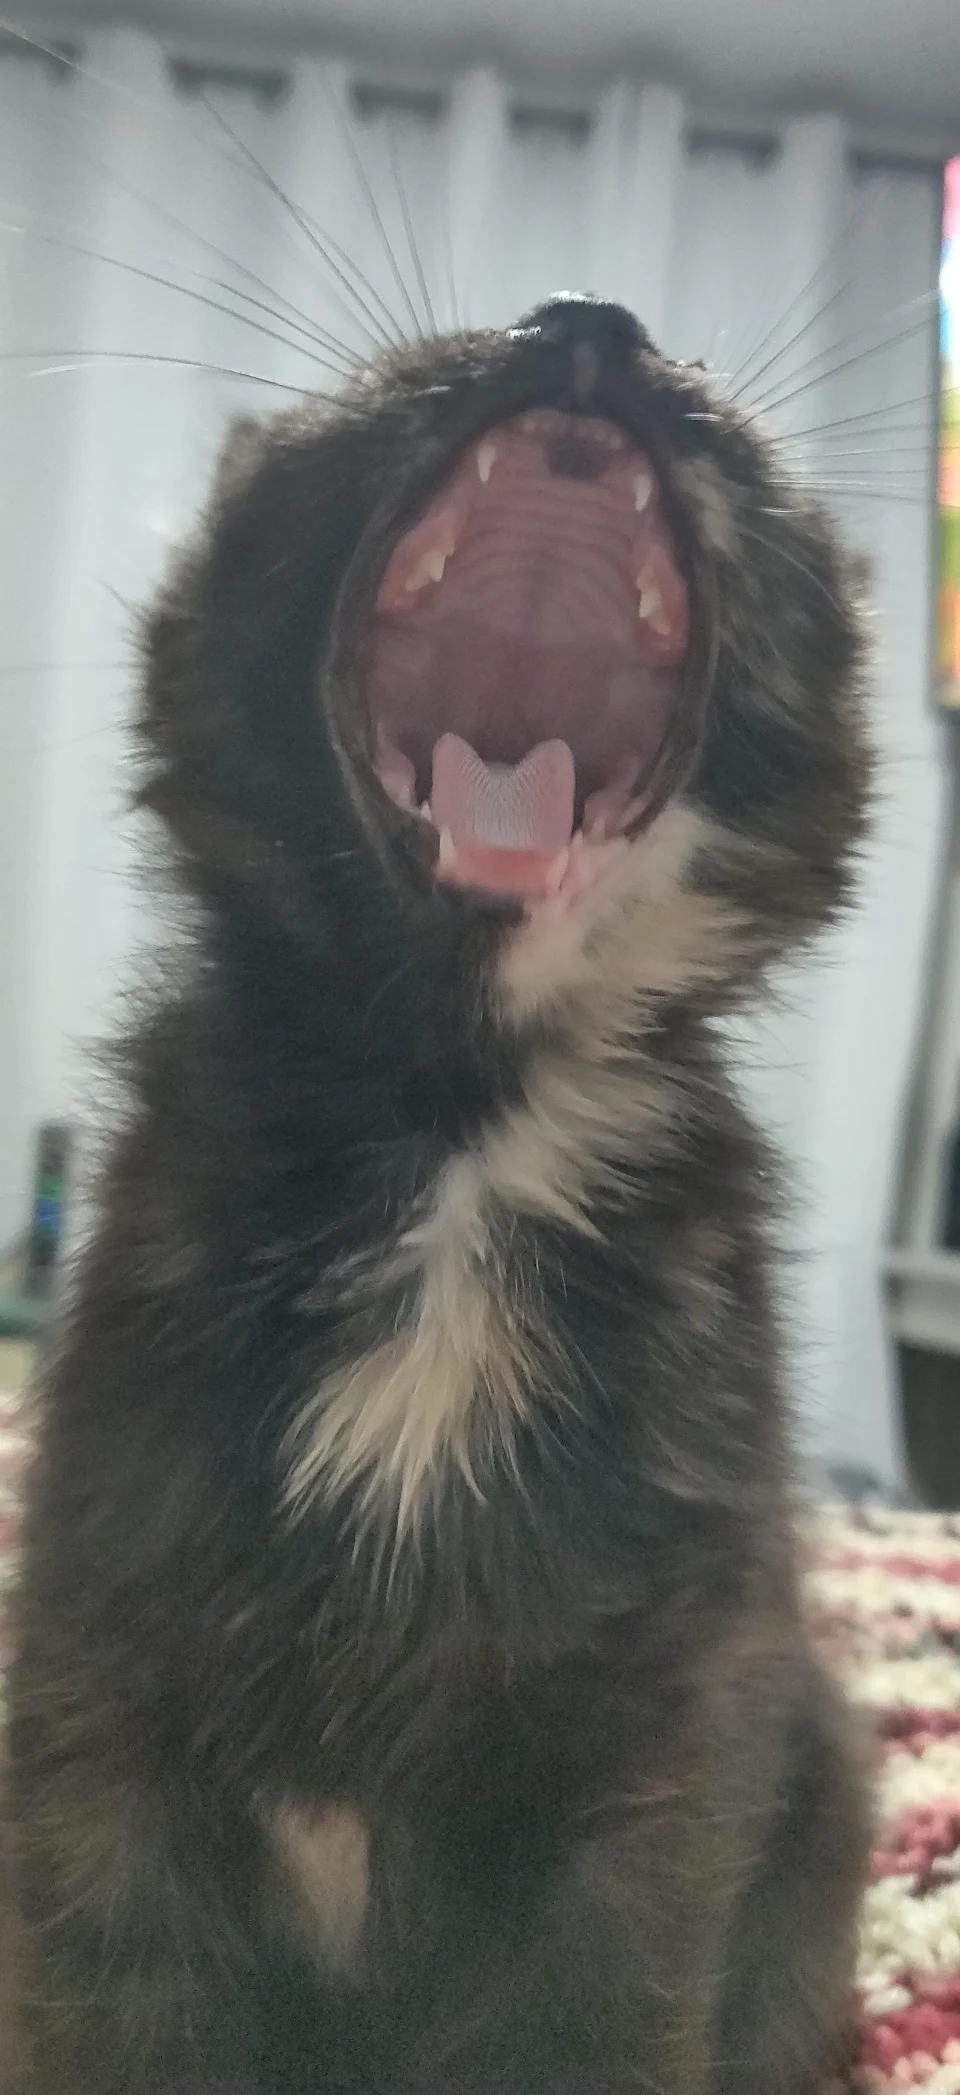 This kitten yawning